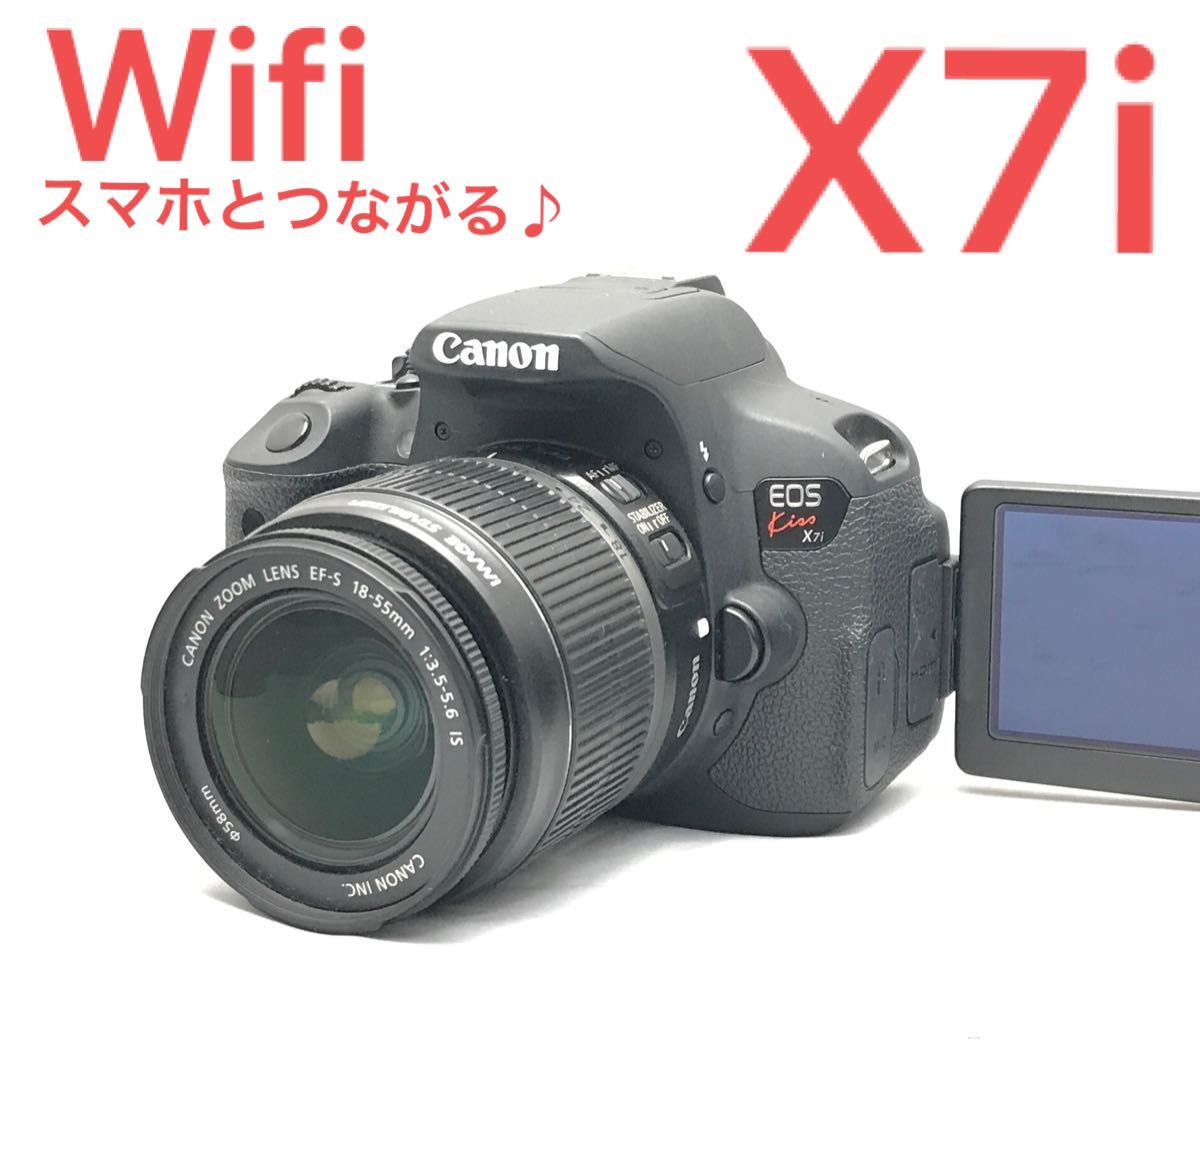 Canon EOS kiss x7i レンズキット wifi スマホとつながる 難しい設定不要 必要なもの全部揃う安心フルセット｜PayPayフリマ